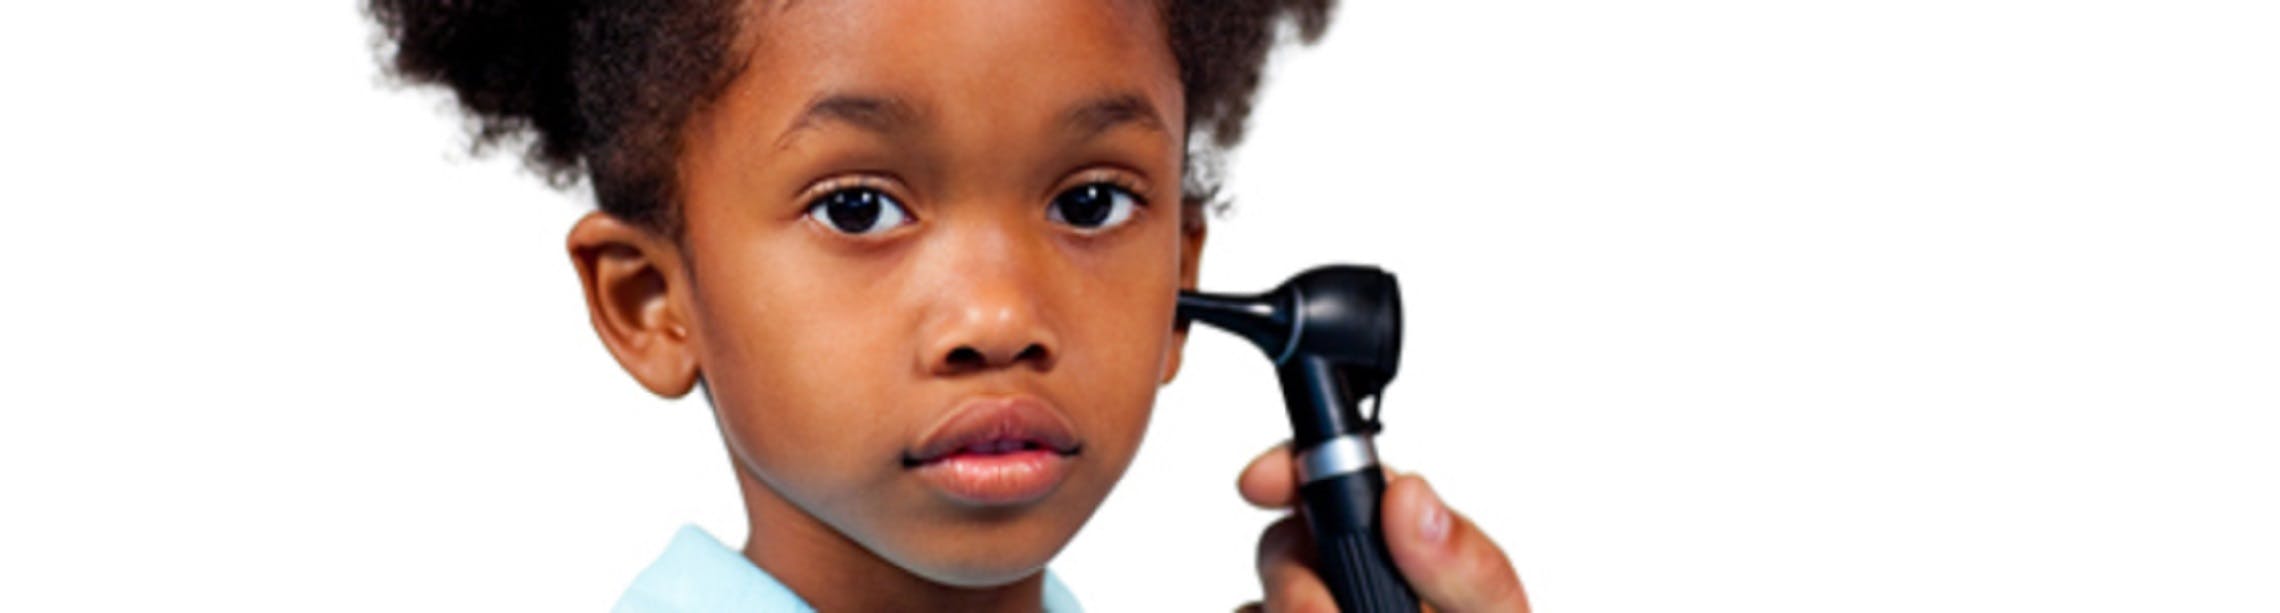 Prevenir y tratar las infecciones de oído de los niños